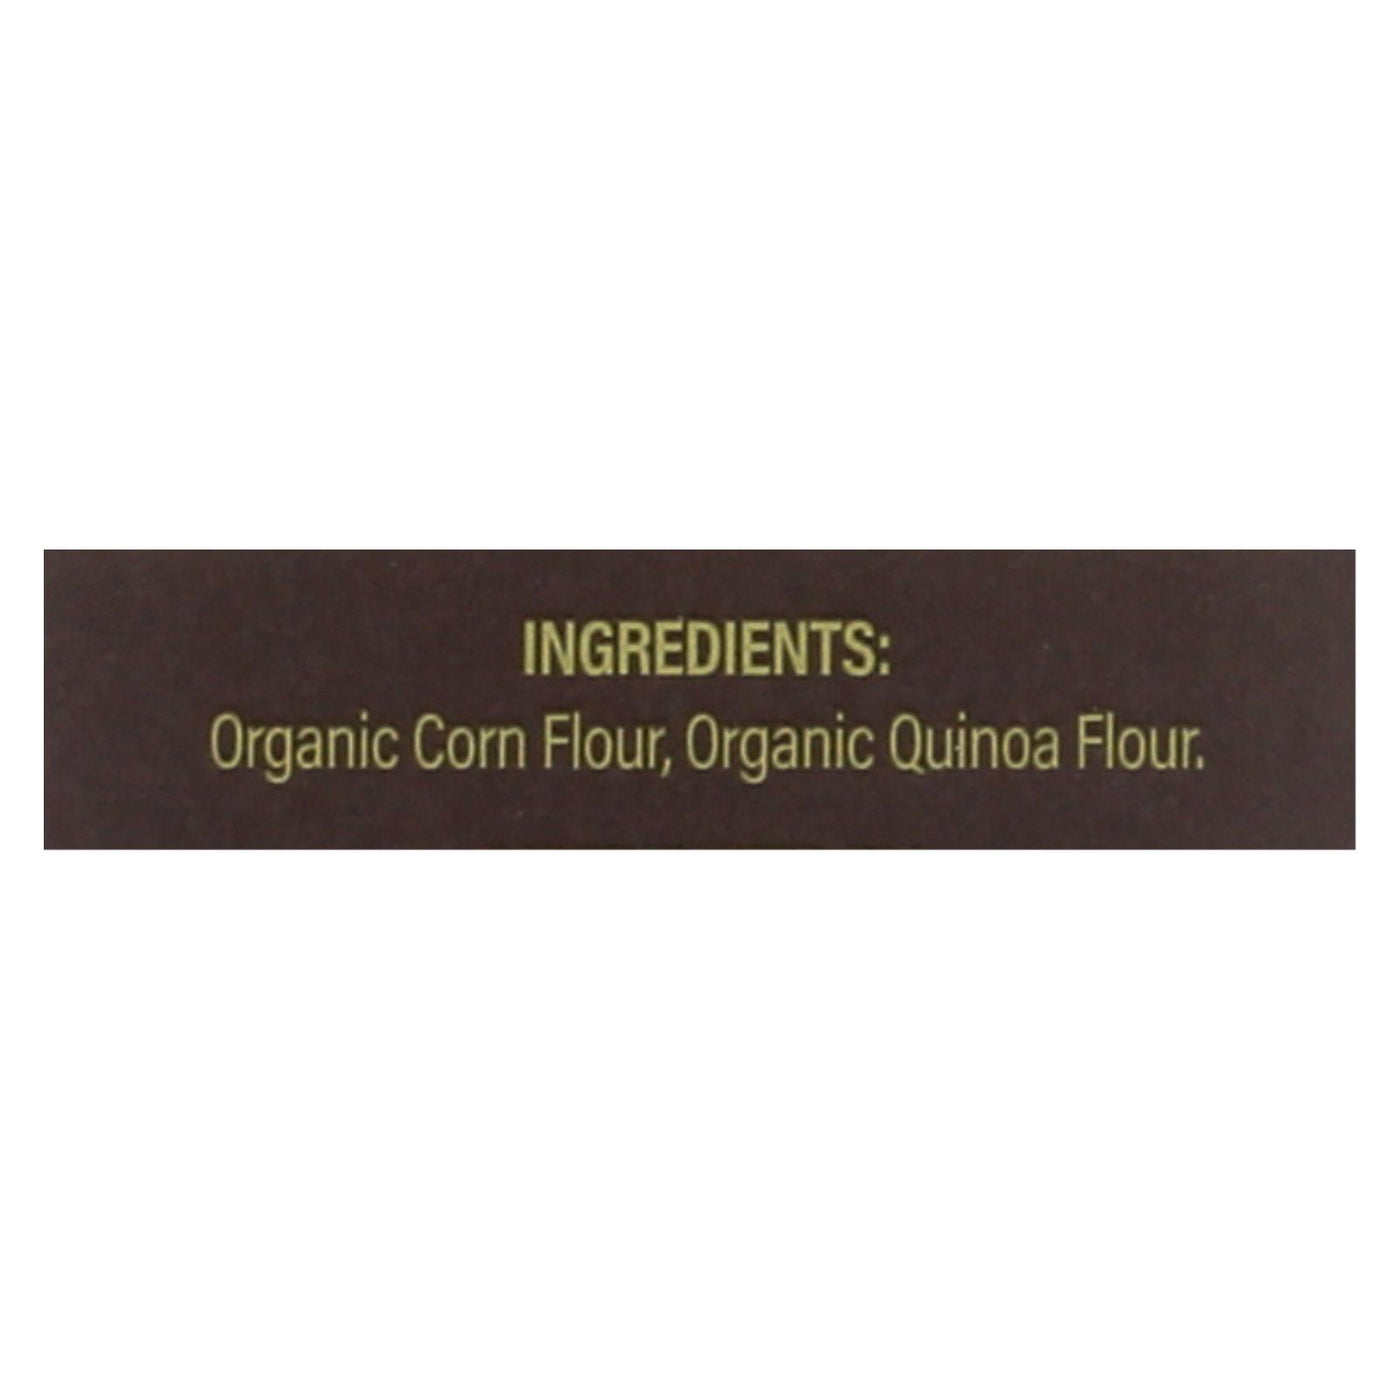 Ancient Harvest Organic Quinoa Supergrain Pasta - Elbows - Case Of 12 - 8 Oz | OnlyNaturals.us